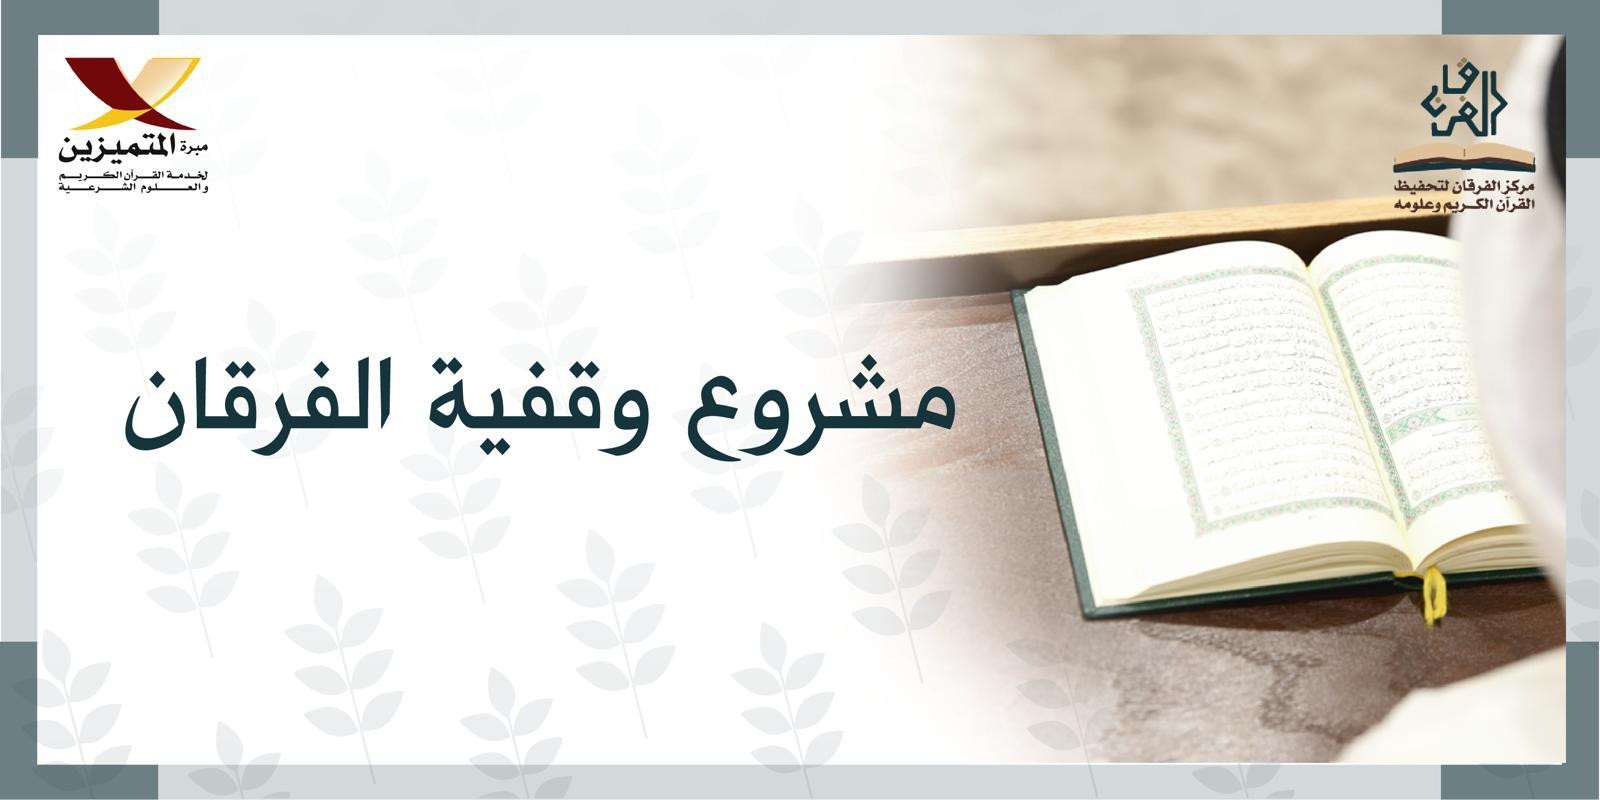 وقفية الفرقان لخدمة أهل القرآن - المرحلة الأولى